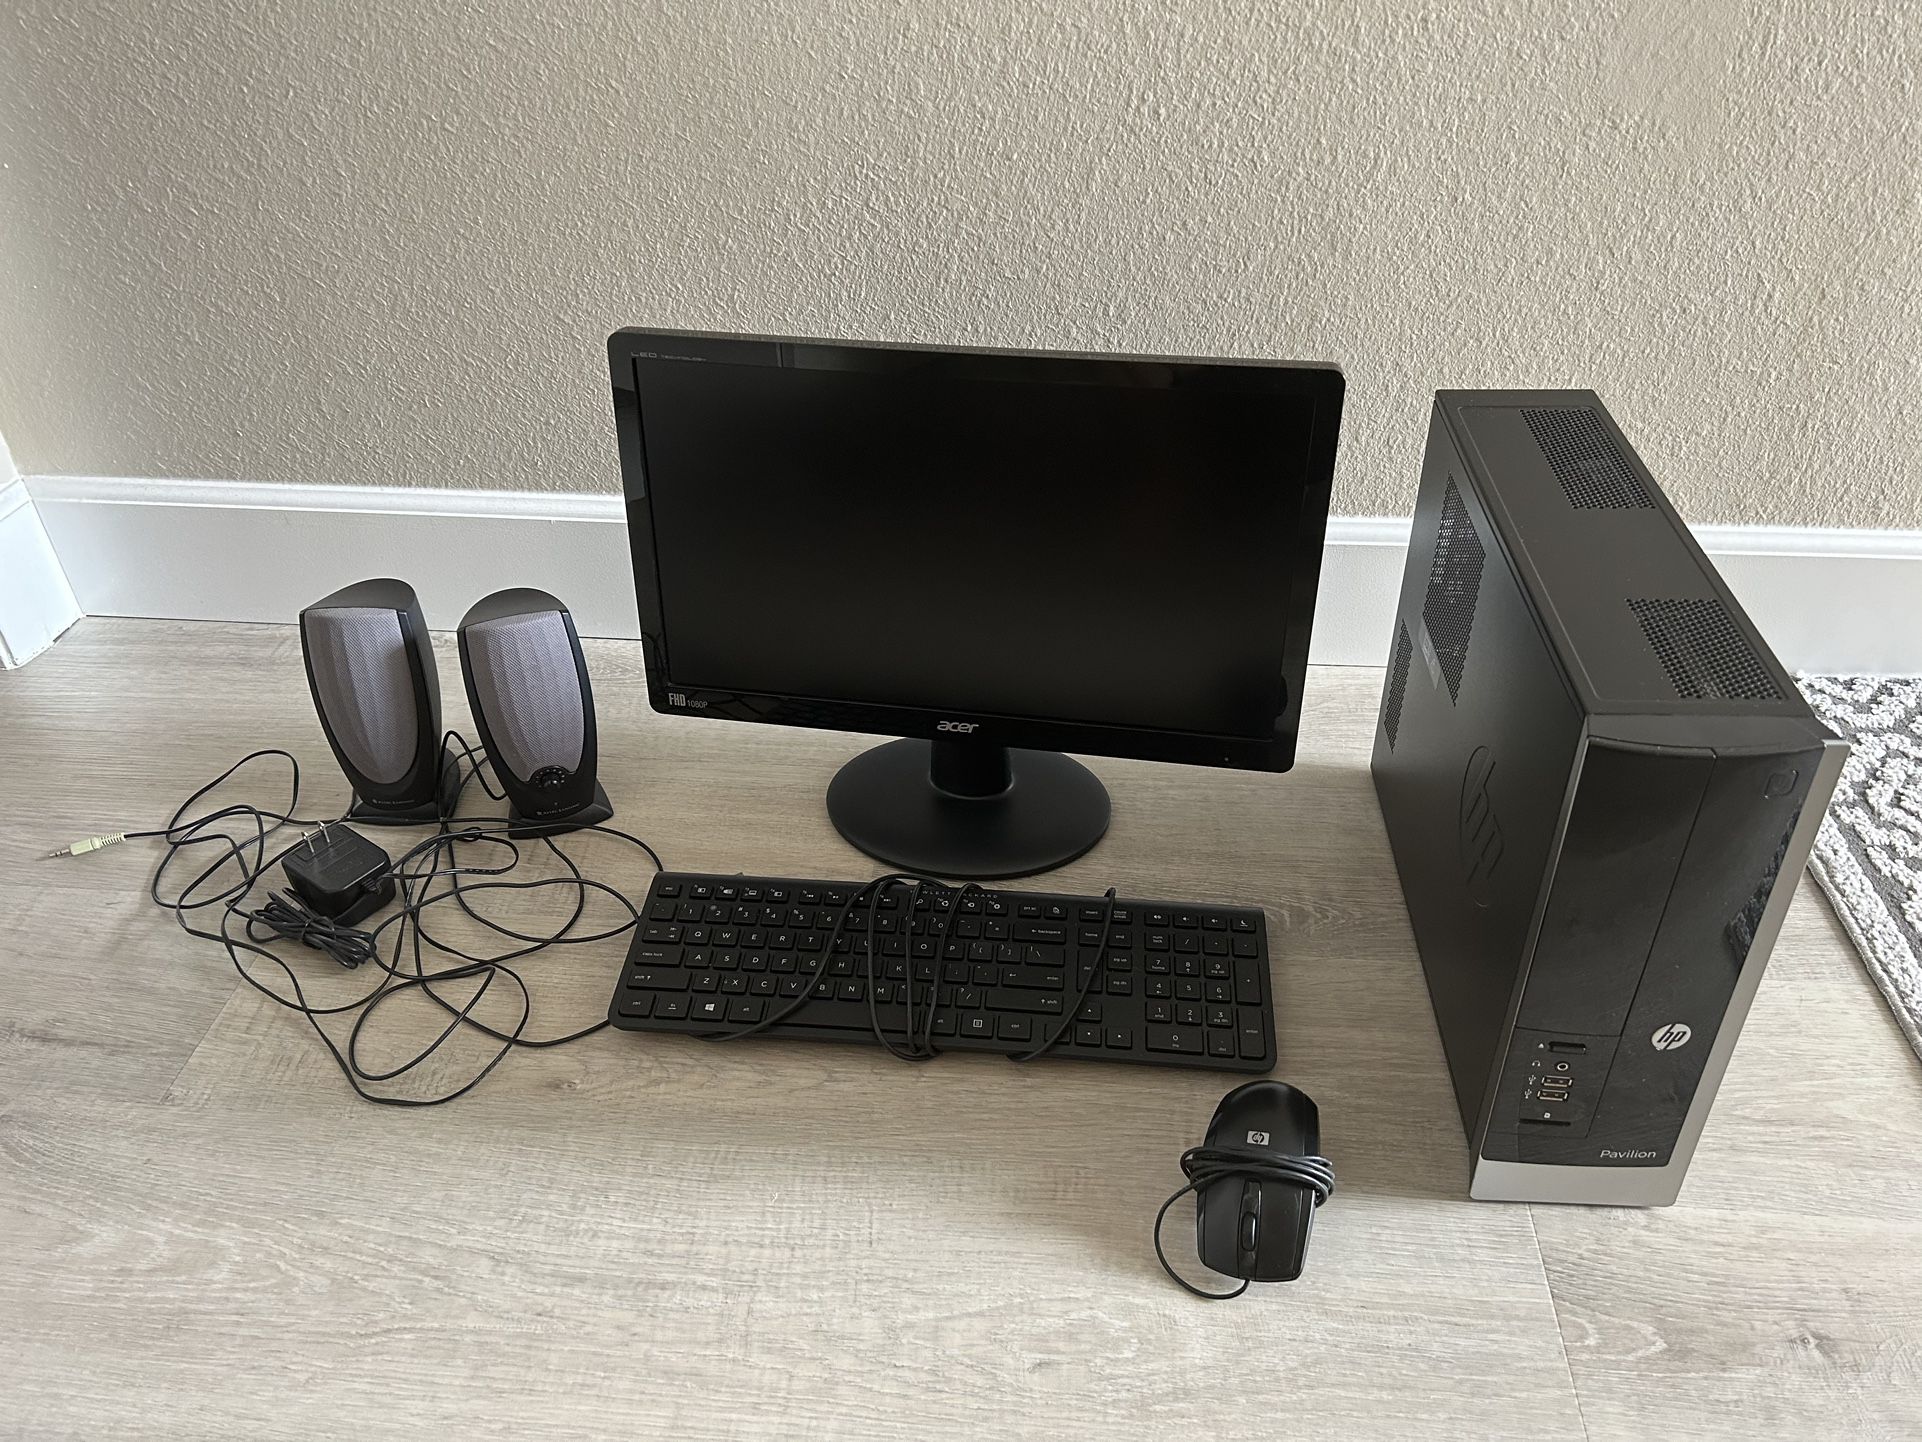 Full Computer Set with HP Pavilion Slimeline 400 Desktop and Acer monitor